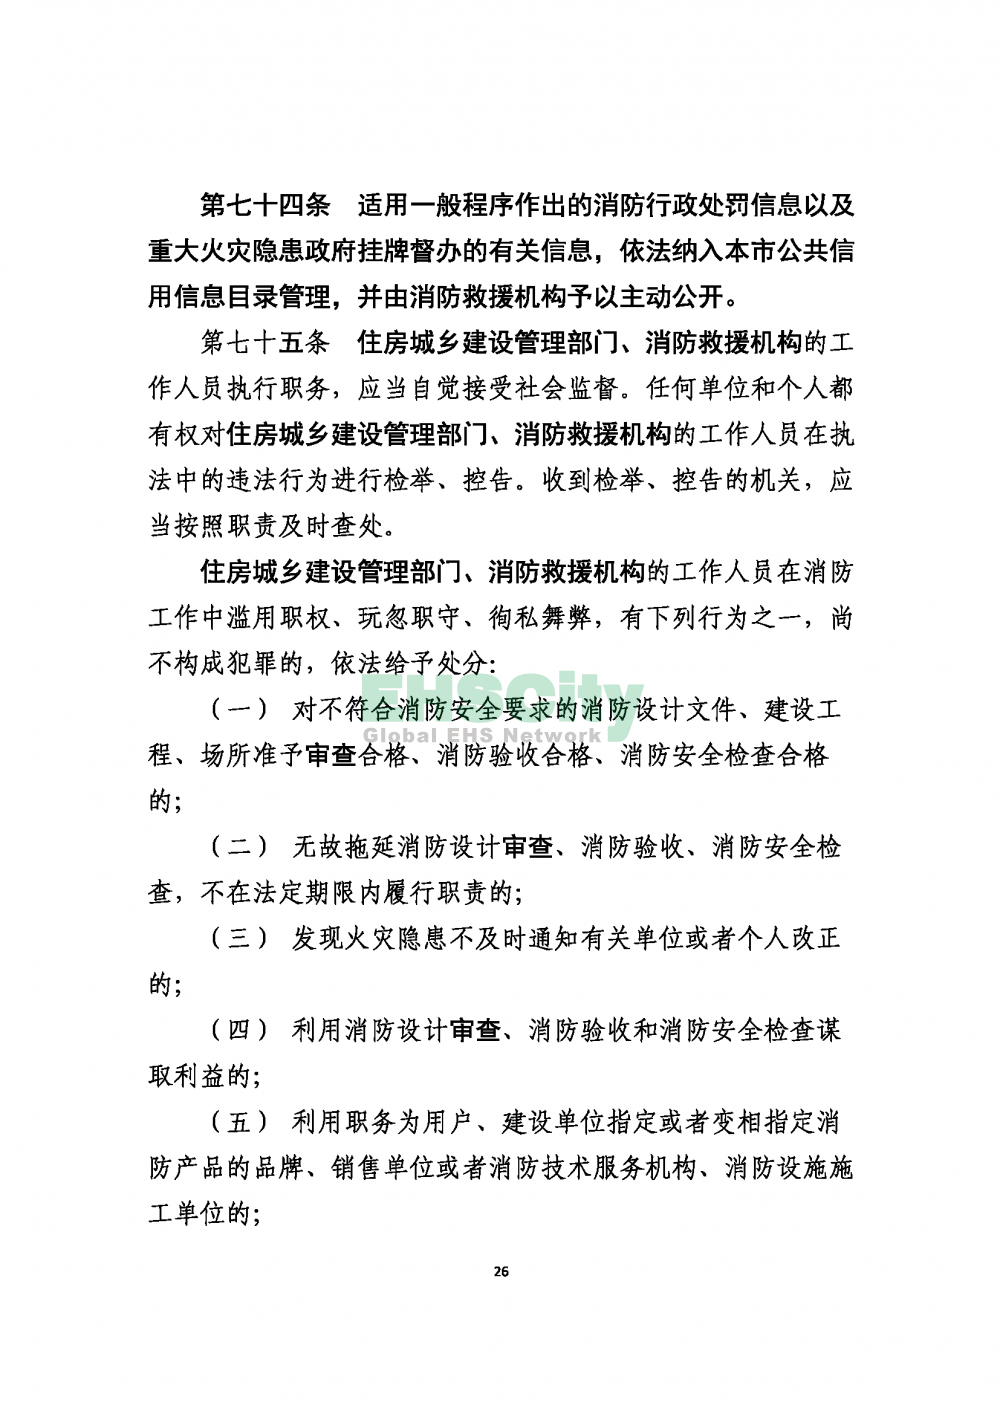 2020版上海消防条例_页面_26